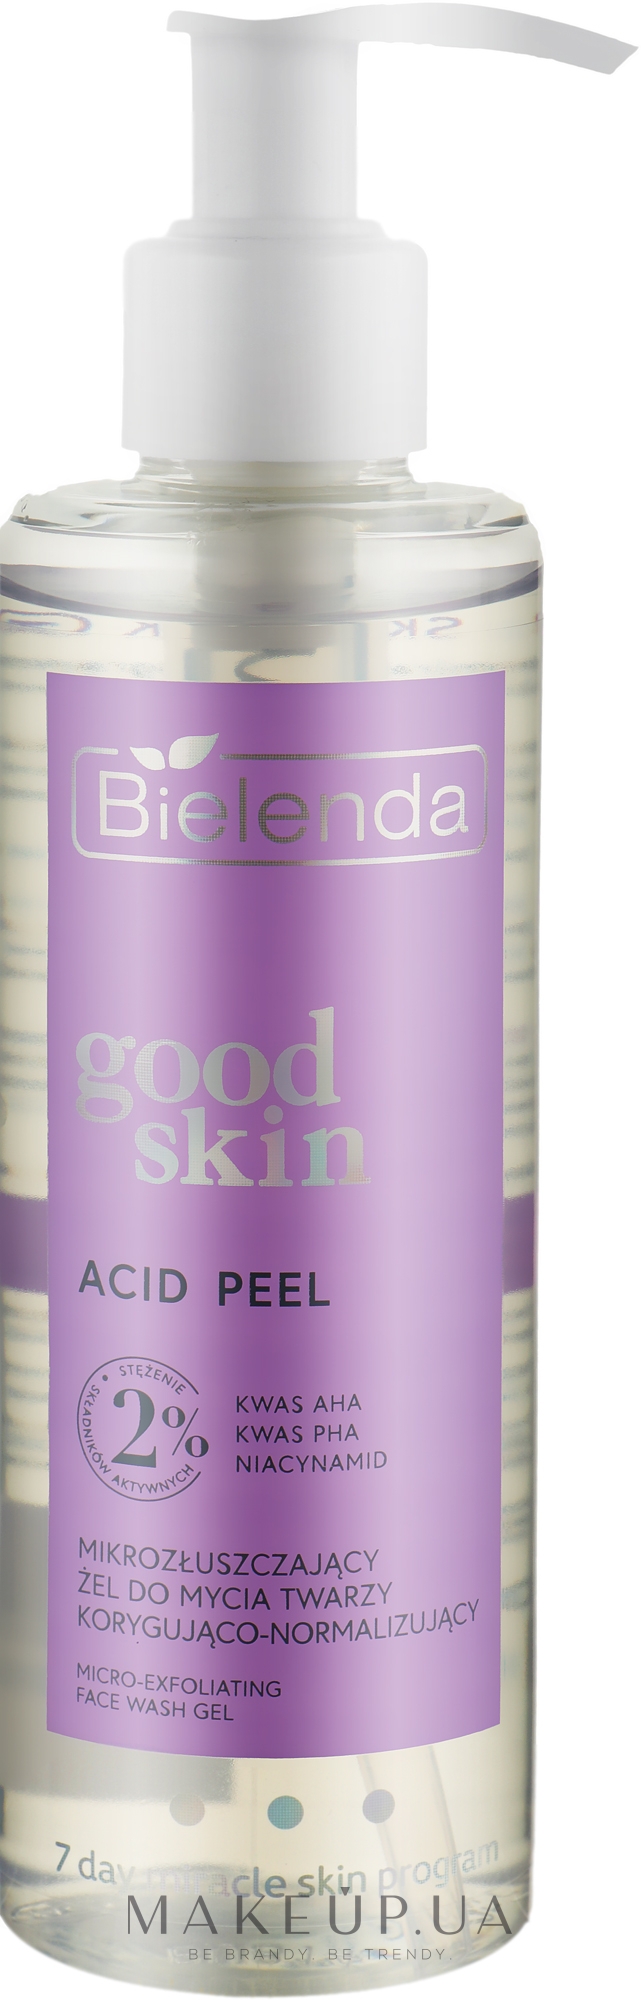 Корректирующий и нормализующий микроотшелушивающий гель для умывания - Bielenda Good Skin Acid Peel Micro-Exfoliating Corrective & Normalizing Face Wash Gel — фото 190g